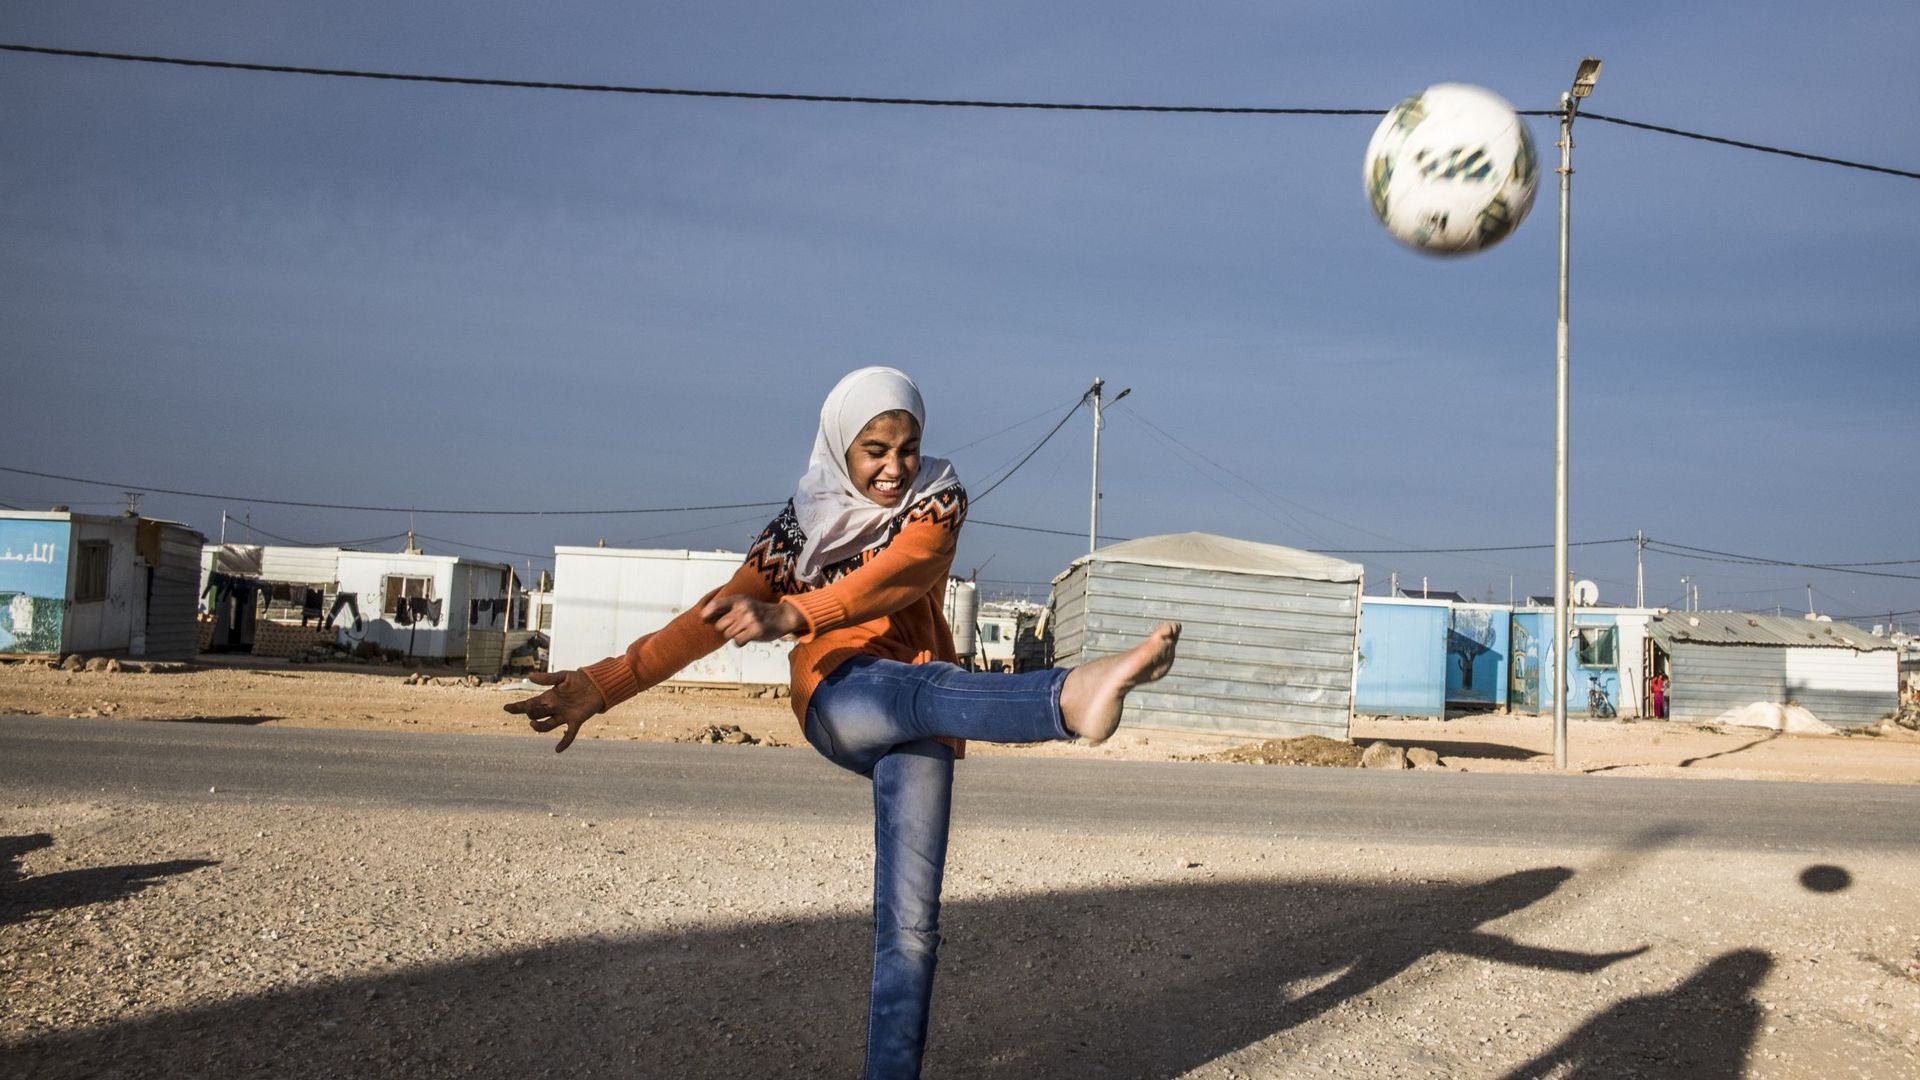 Tous les matins, dans le camp de réfugiés syriens de Zaatari, des dizaines de fillettes foulent le terrain à l’abri des regards et de la pression de la communauté. Avec ceci de supplémentaire qu’ici, le football casse le rythme du camp et éloigne autant q